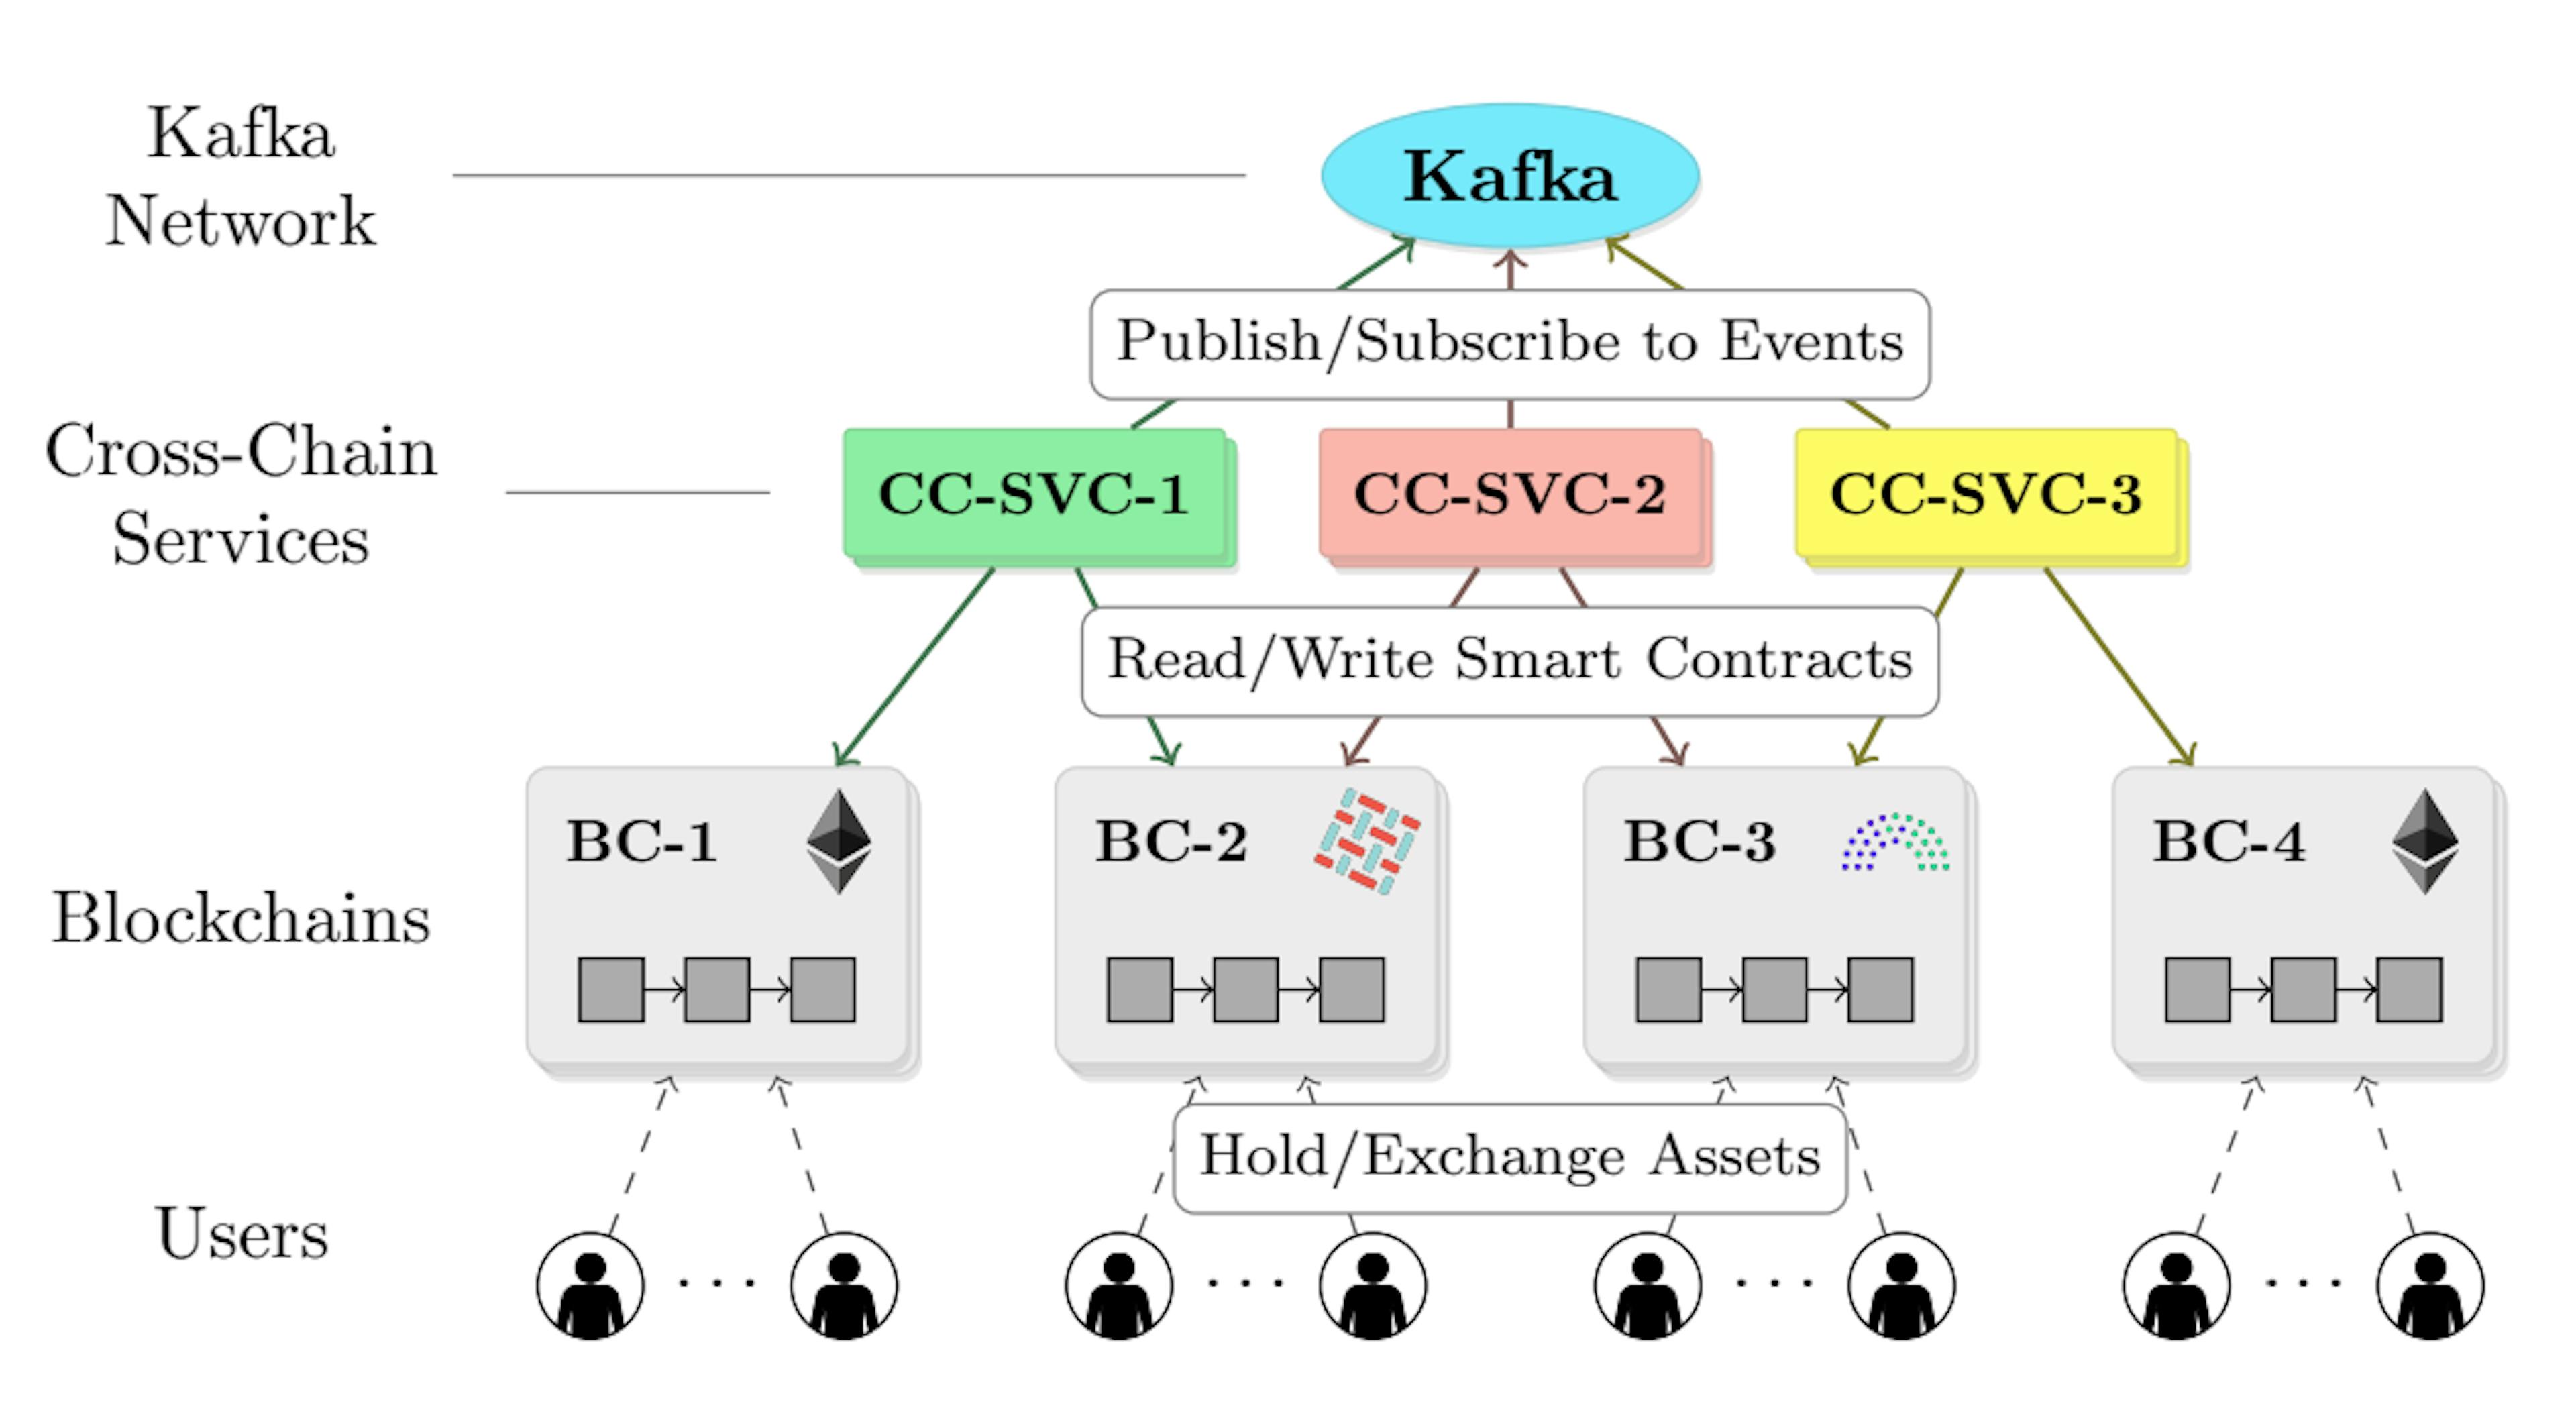 1. Arquitetura PIECHAIN: serviços cross-chain (CC-SVCs) leem/gravam eventos de/para a rede Kafka e interagem com os diferentes blockchains subjacentes (BCs).